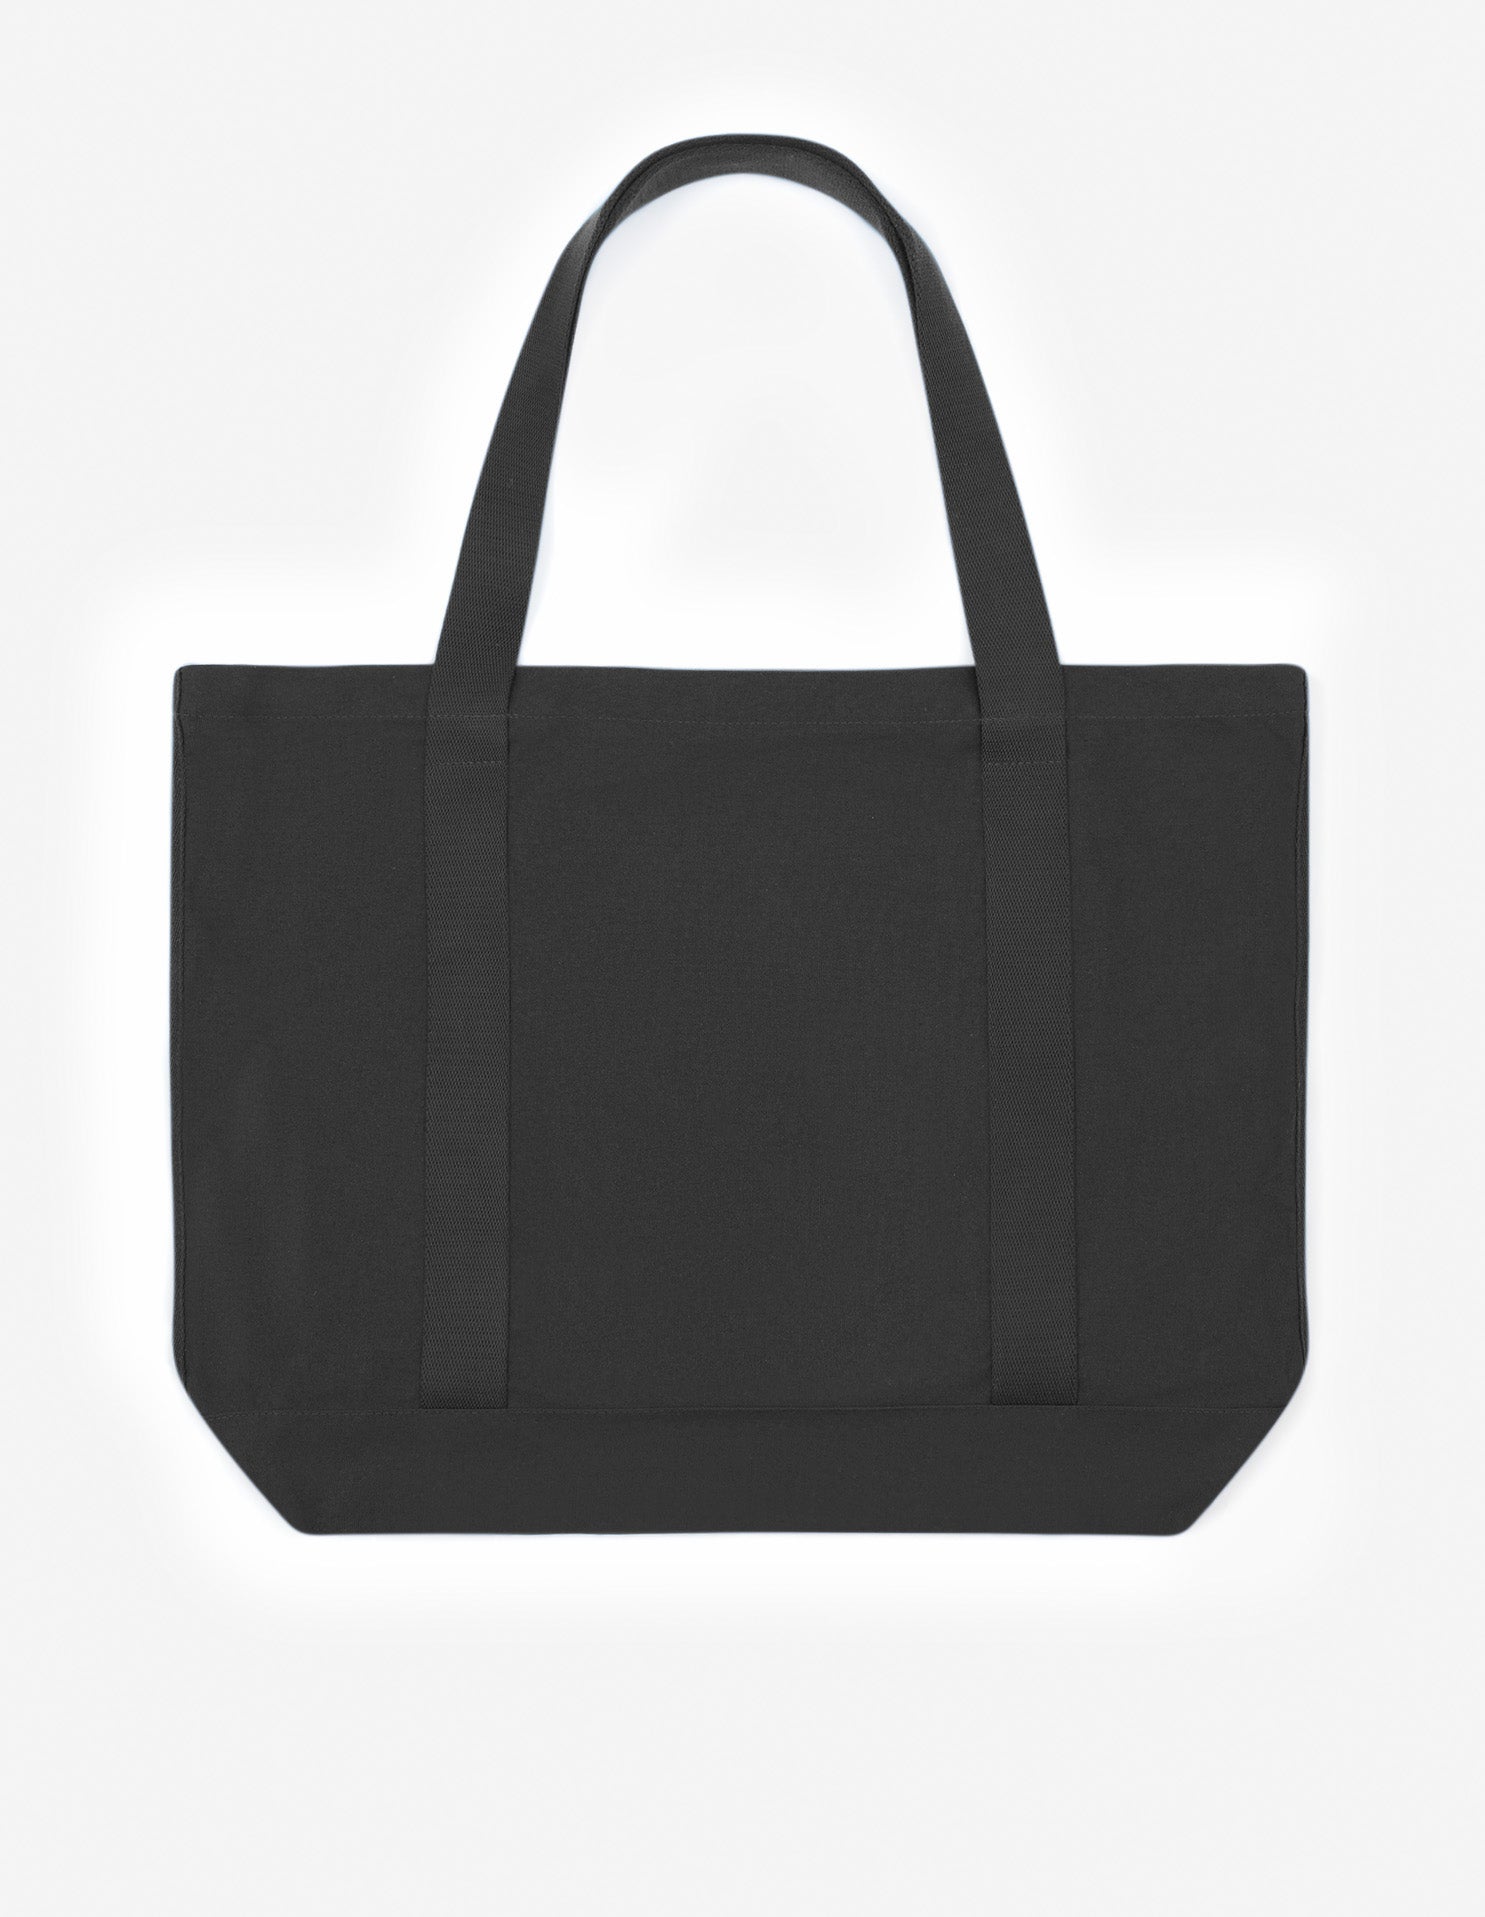 Palais Royal shopping bag, black